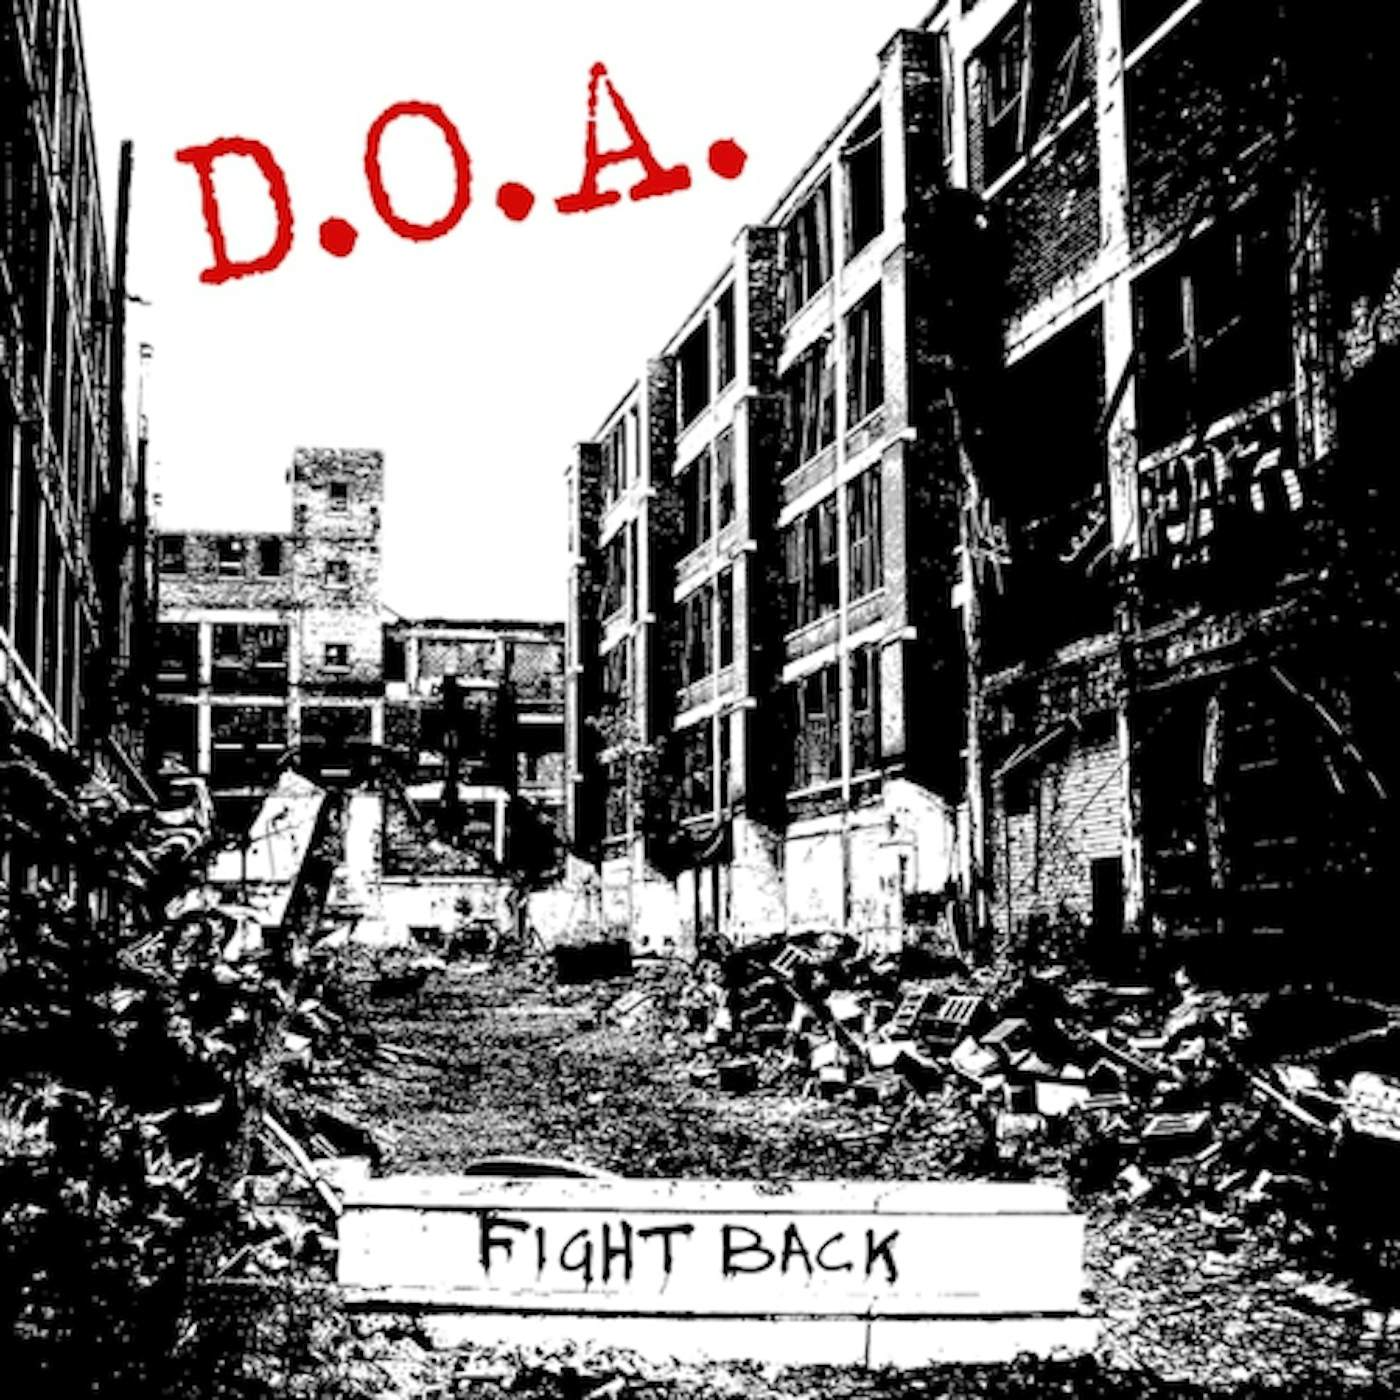 D.O.A. FIGHT BACK CD